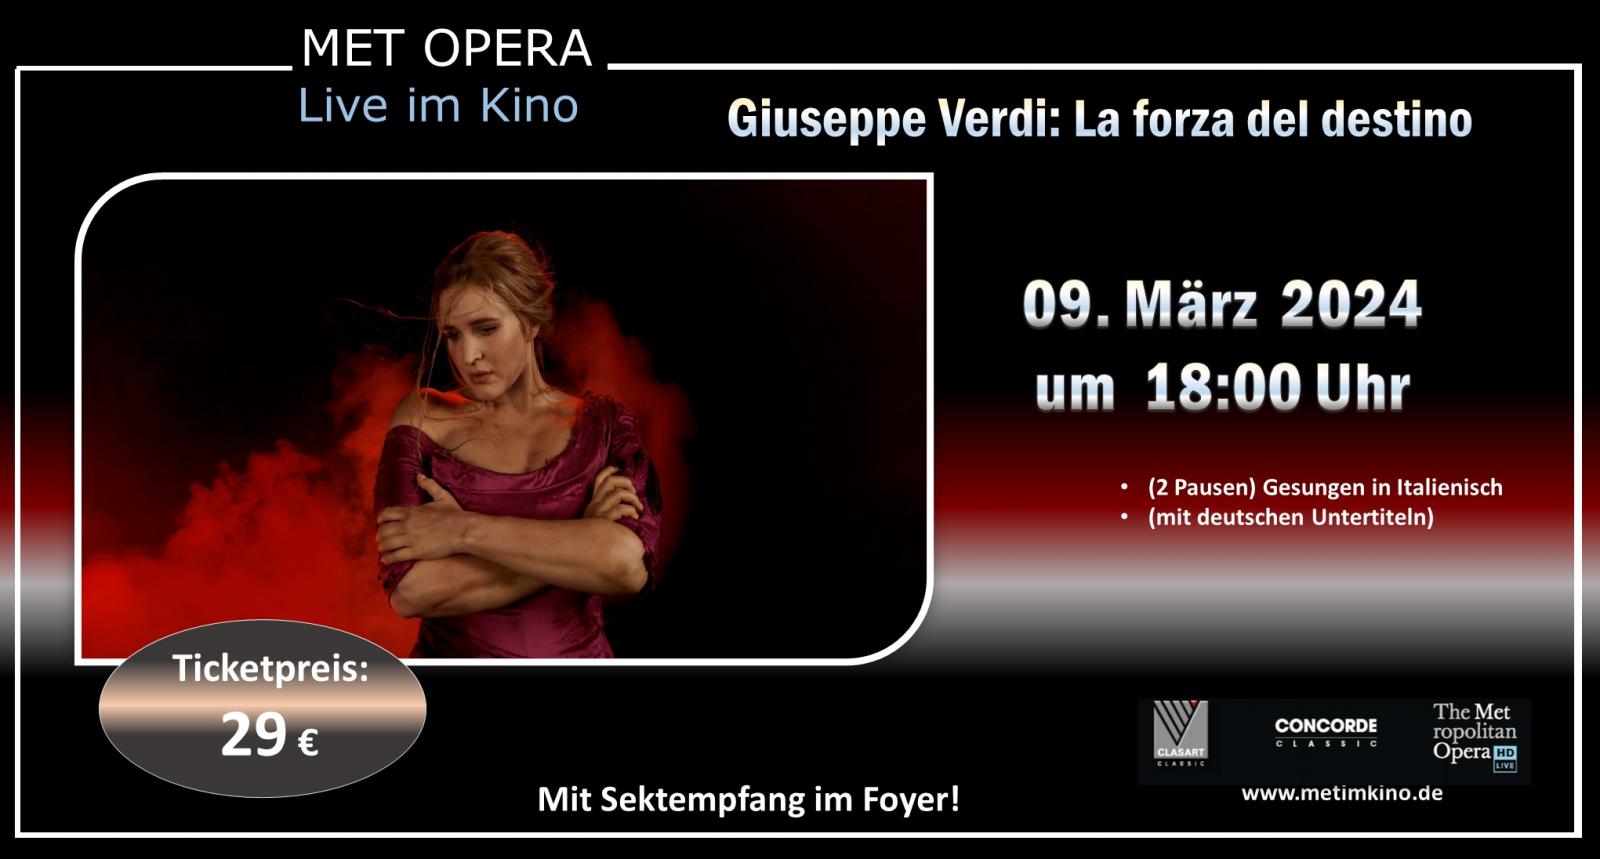 Met Opera 2023/24: Giuseppe Verdi: LA FORZA DEL DESTINO 